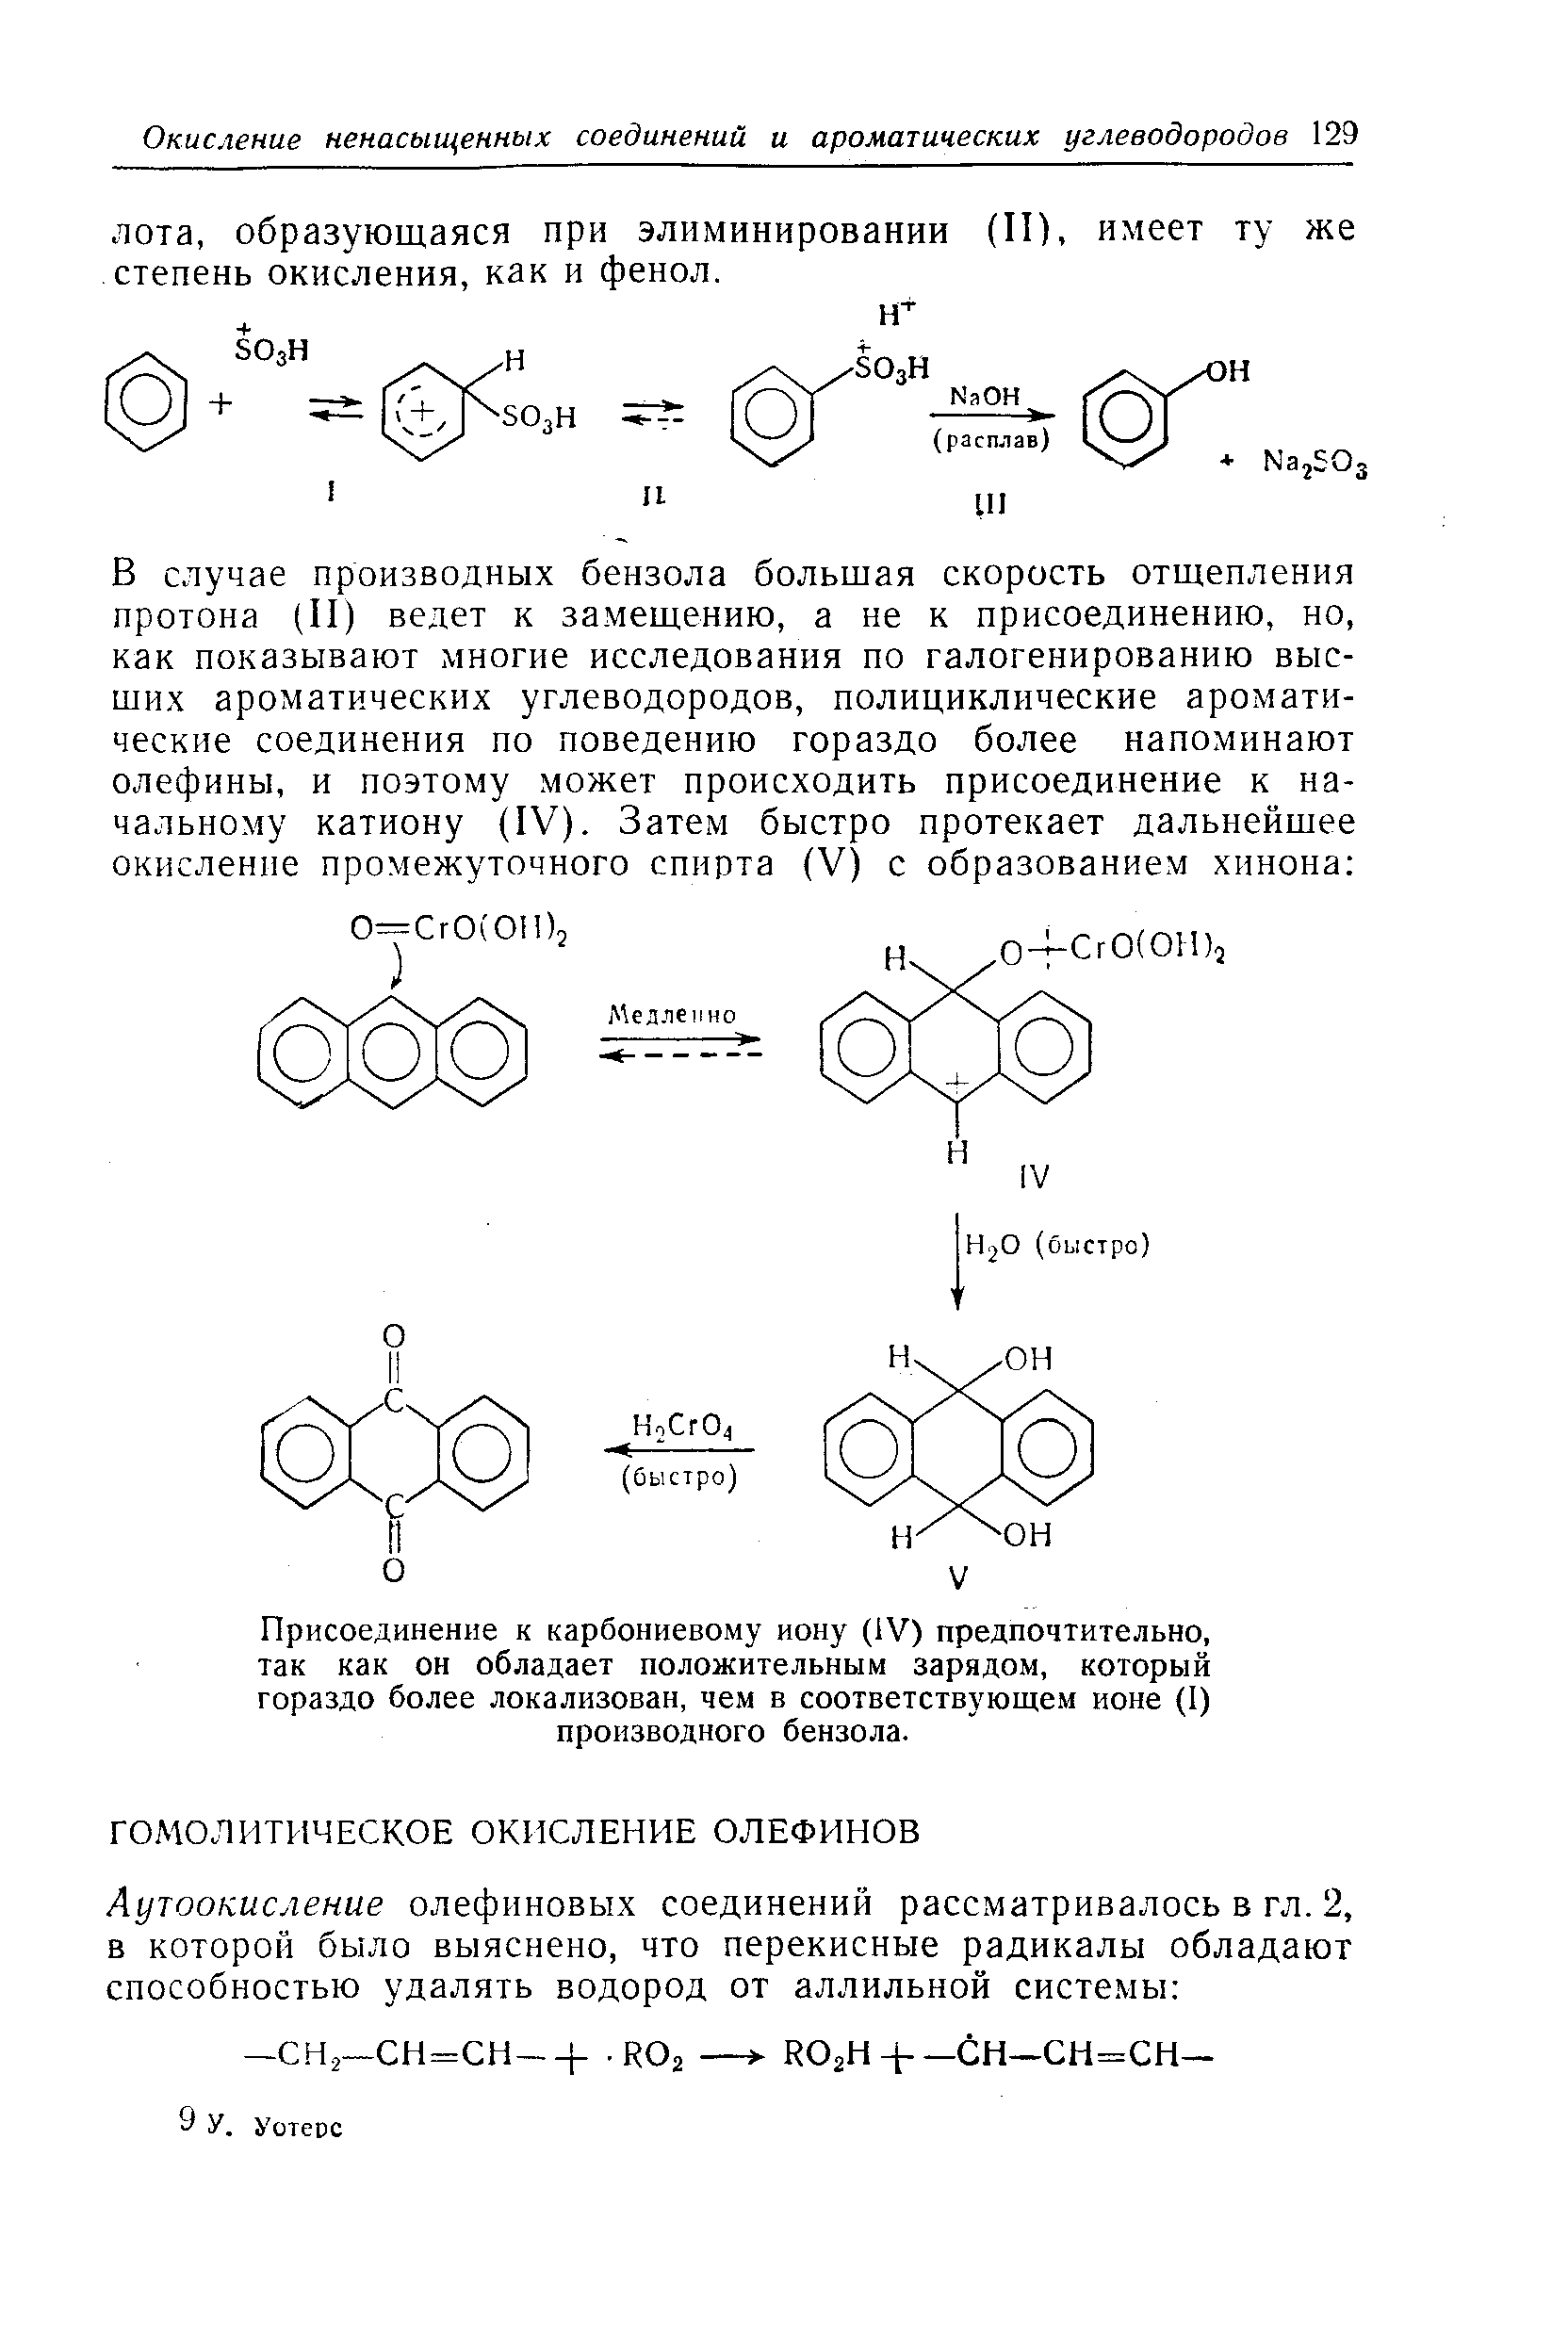 Присоединение к карбониевому иону (IV) предпочтительно, так как он обладает положительным зарядом, который гораздо более локализован, чем в соответствующем ионе (I) производного бензола.